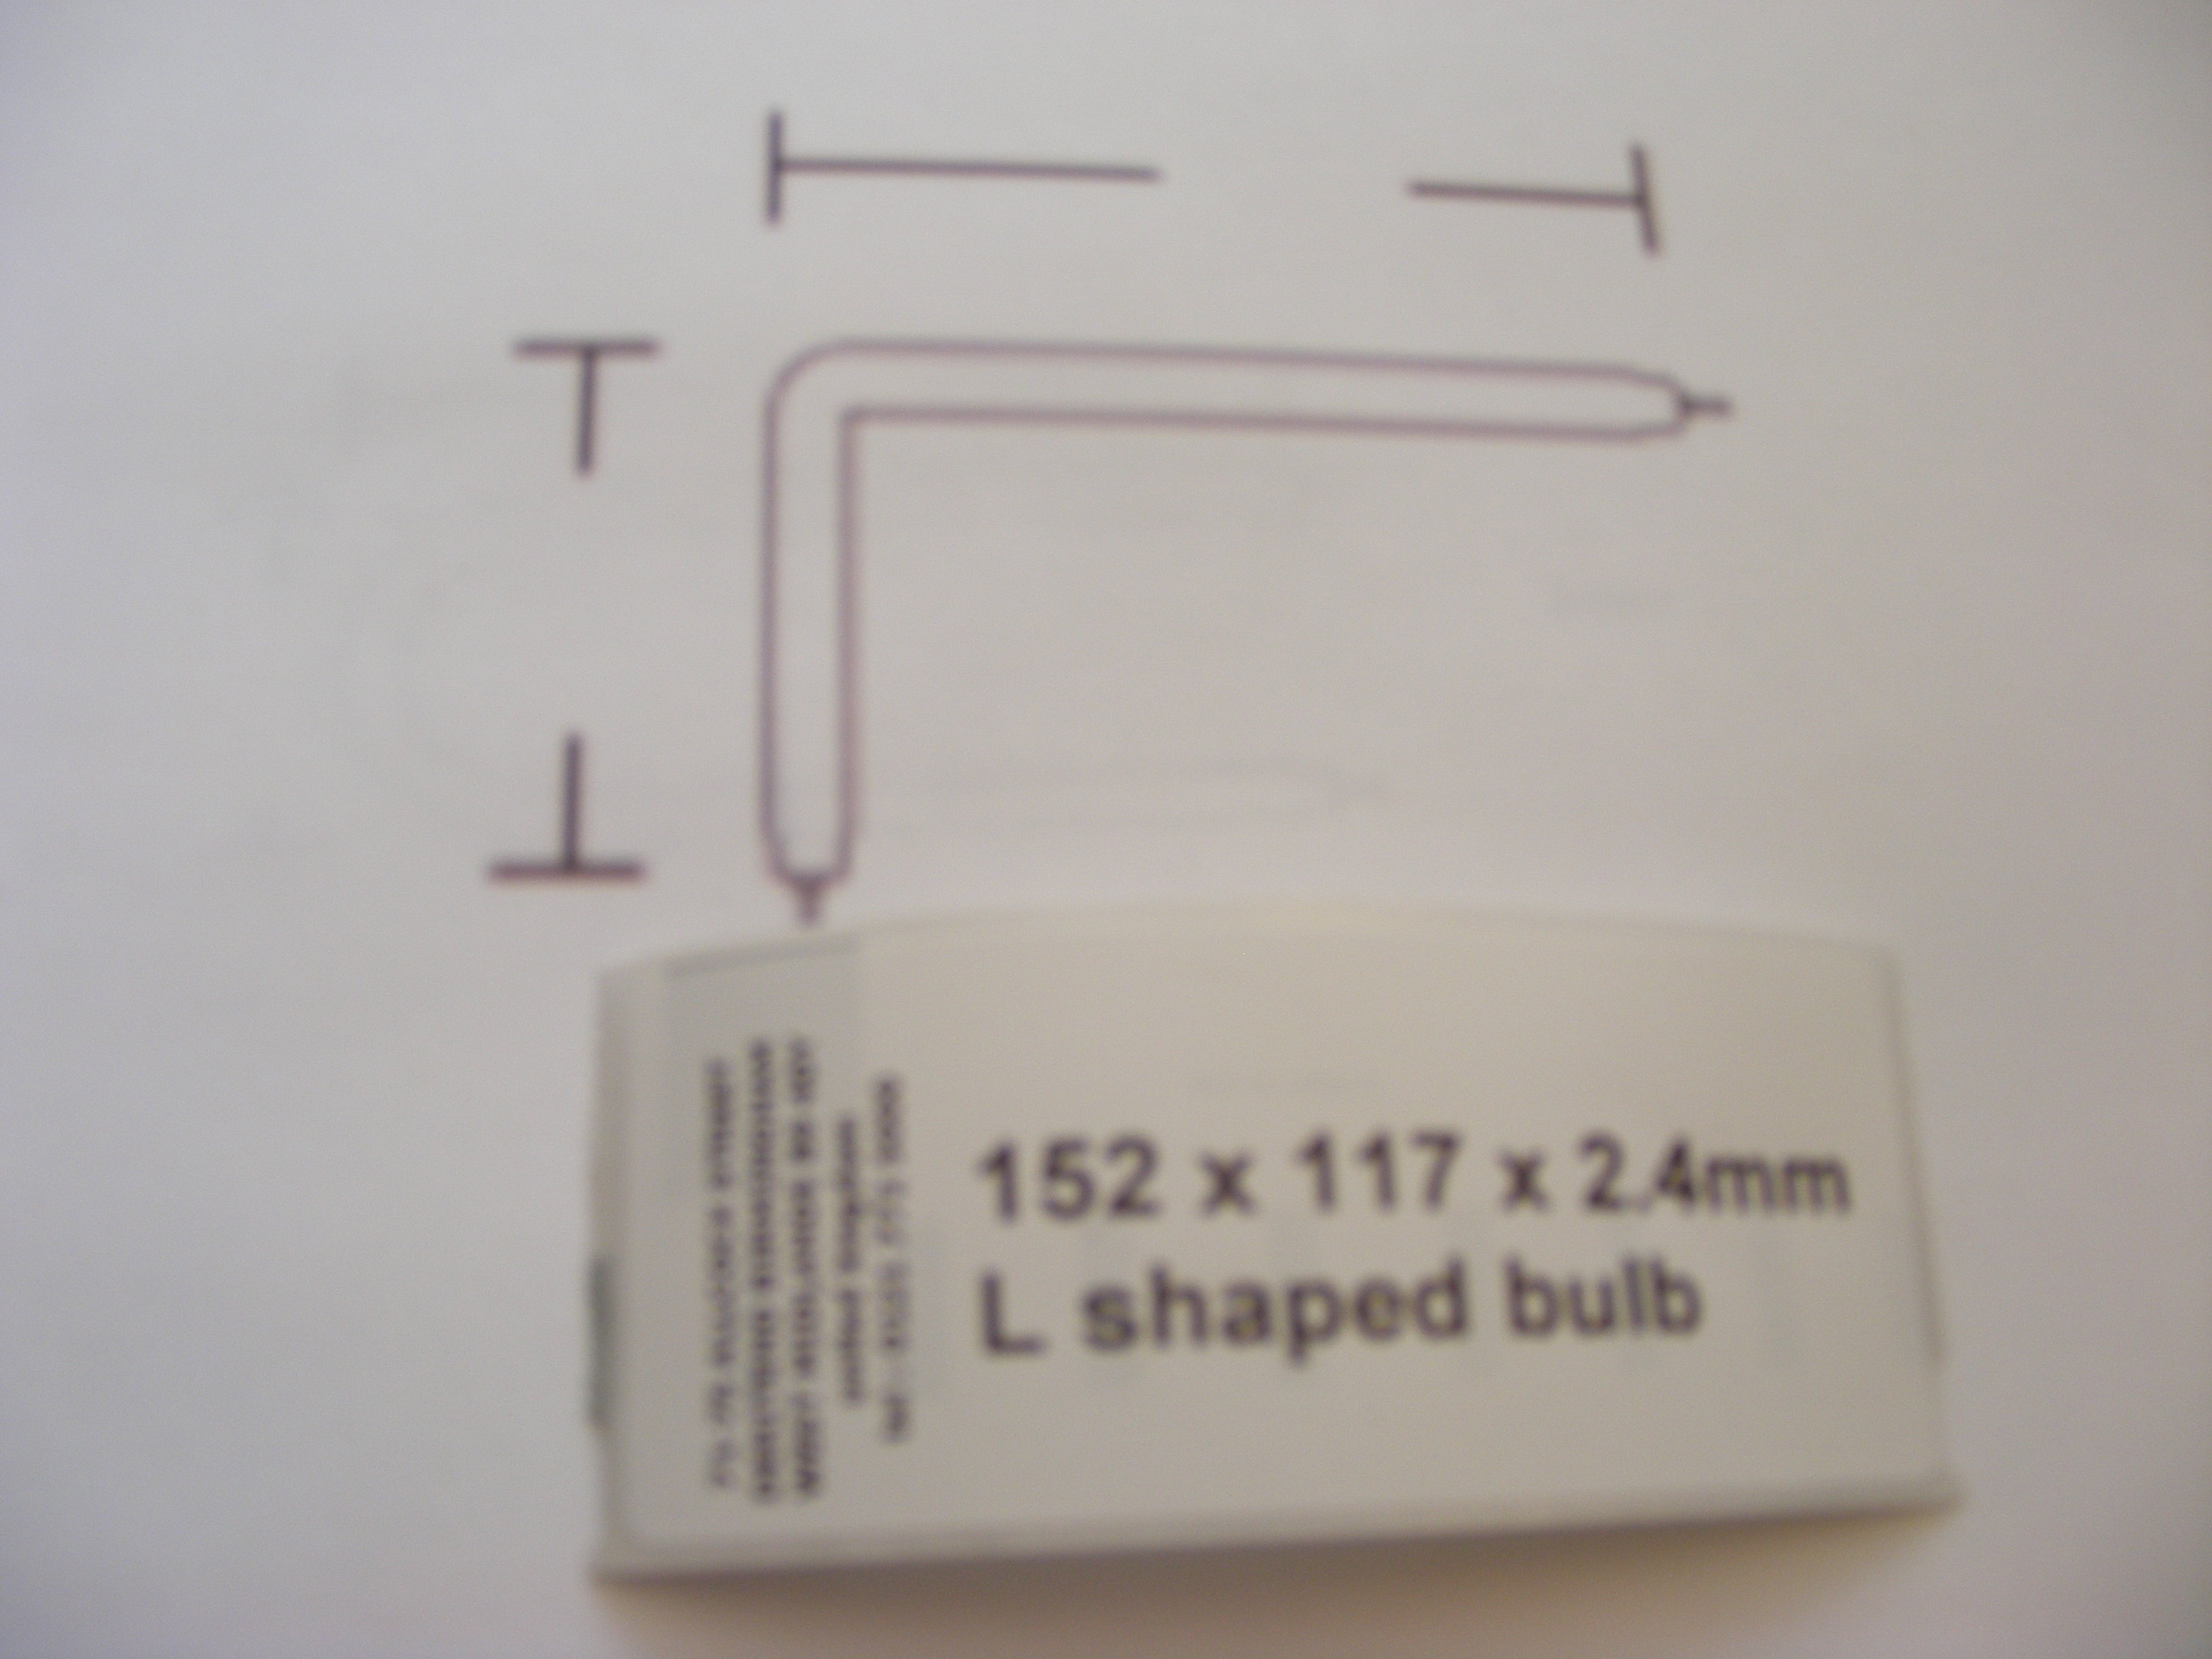 152 x 117 x 2.4mm L shaped bulb